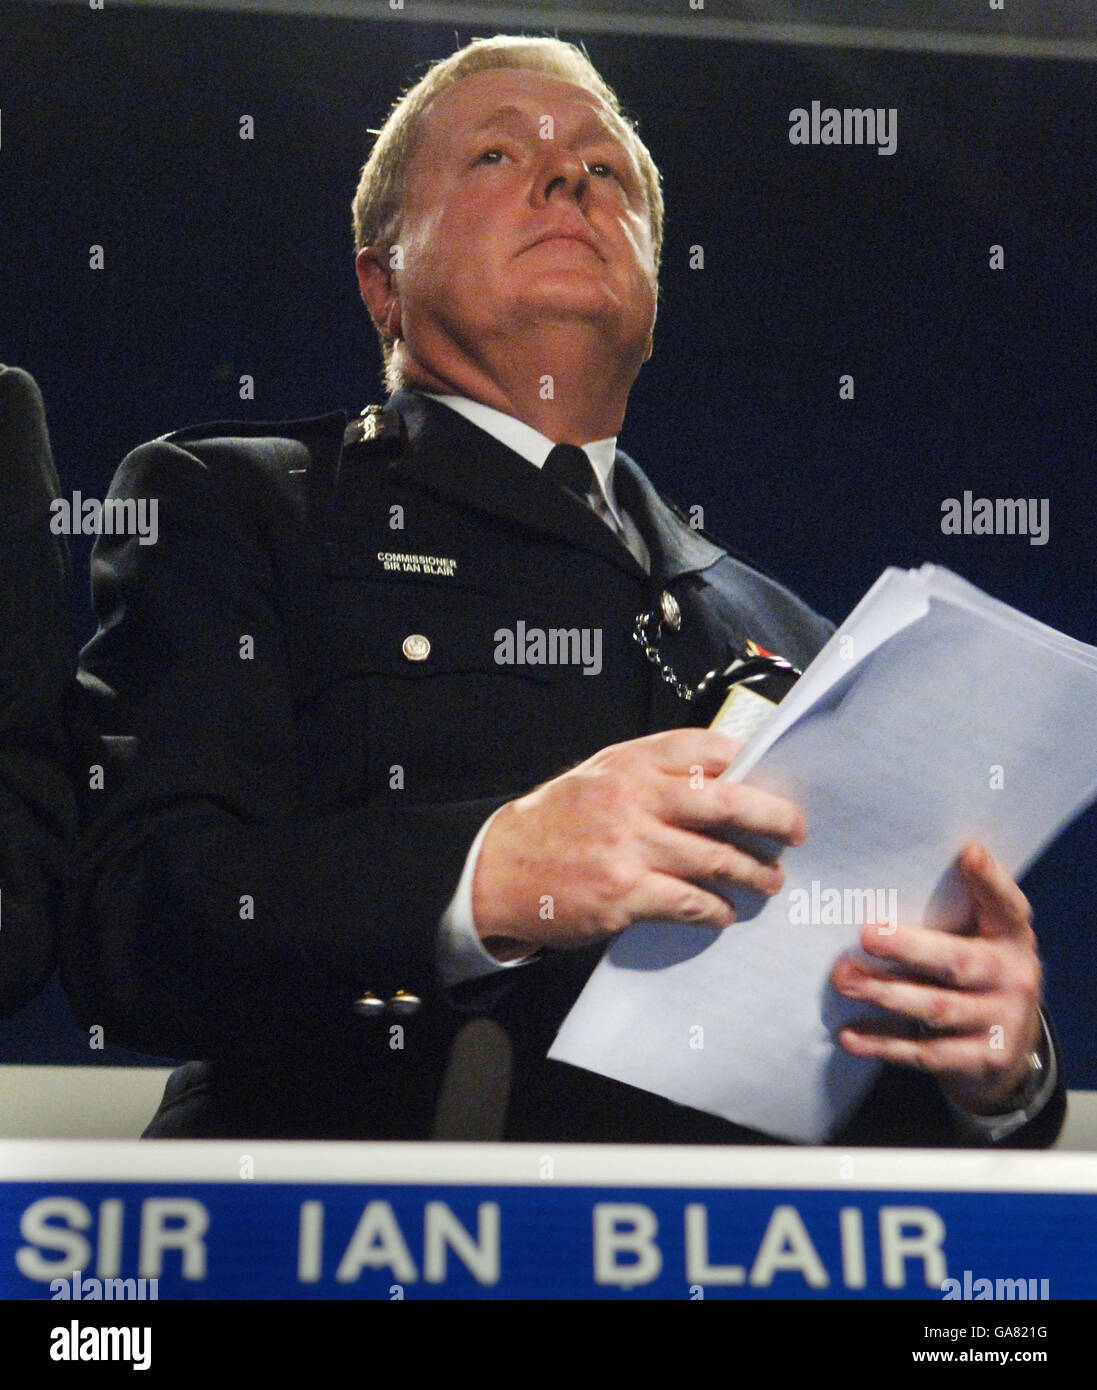 Der Metropolitan Police Commissioner, Sir Ian Blair, gibt während einer Pressekonferenz in Scotland Yard, London, eine Erklärung über den IPCC-Bericht über die Tötung von Jean Charles de Menezes an der Stockwell U-Bahnstation im Jahr 2005 ab. Stockfoto